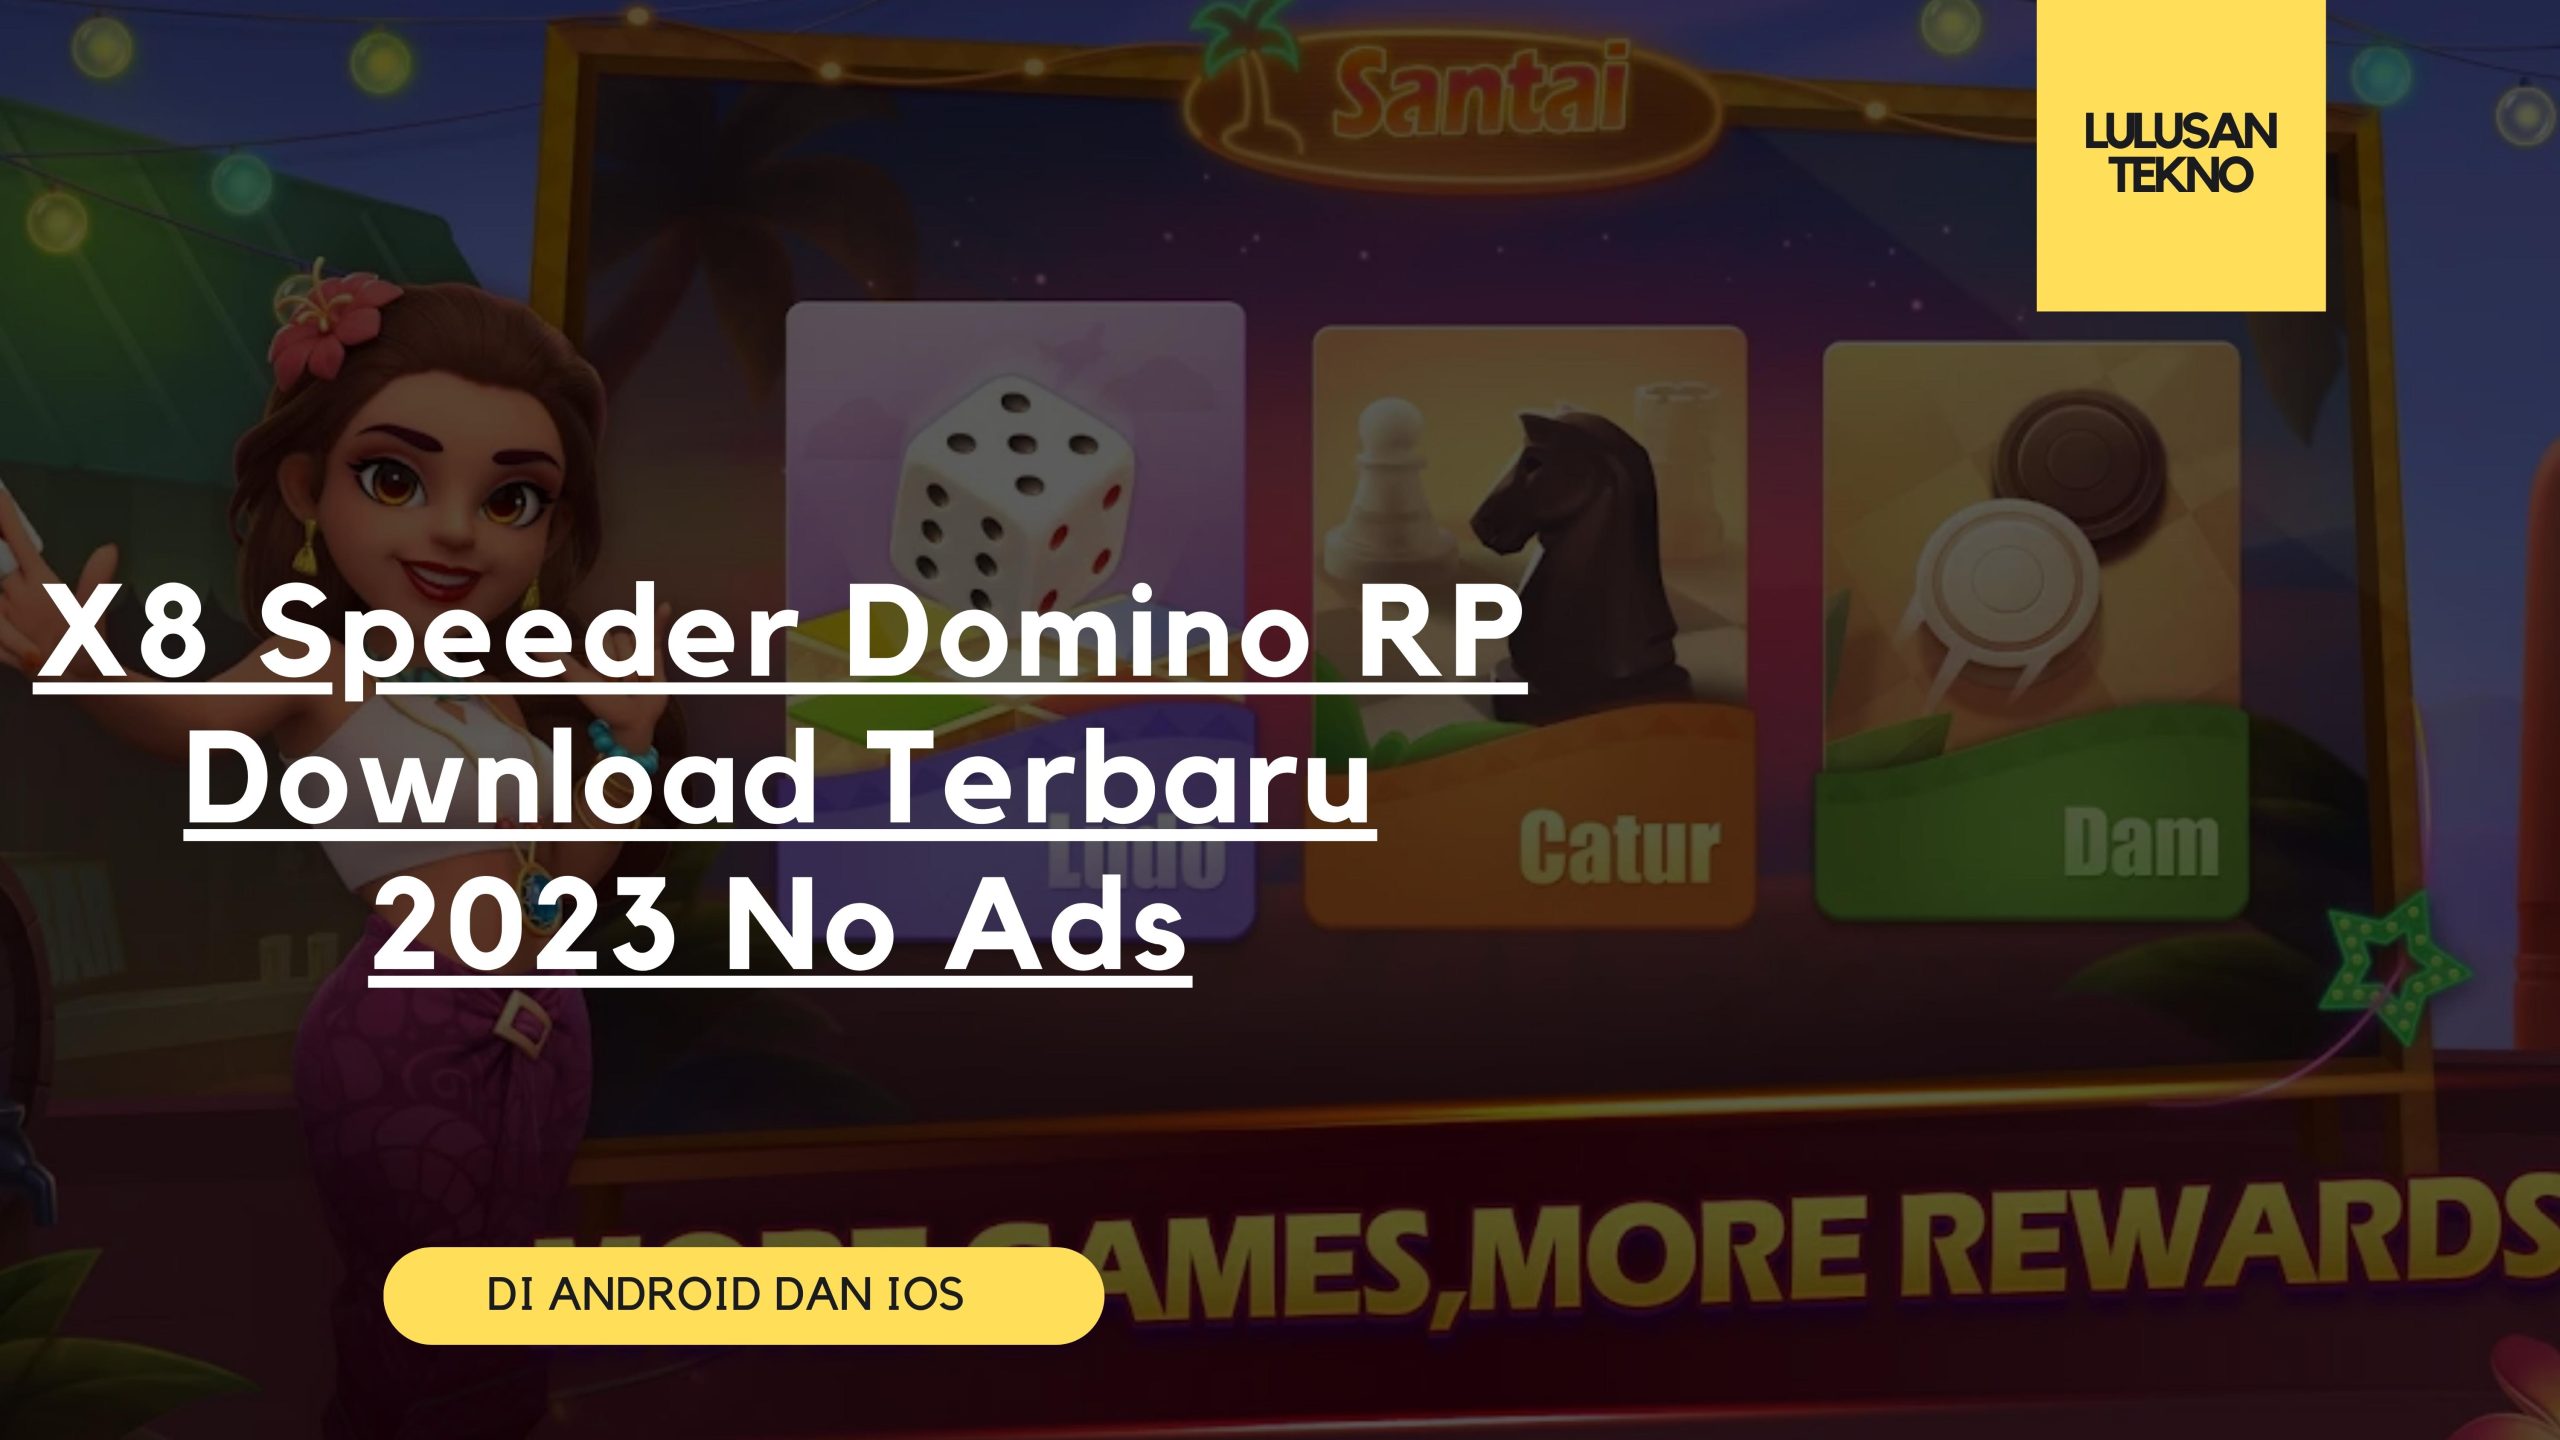 X8 Speeder Domino RP Download Terbaru 2023 No Ads